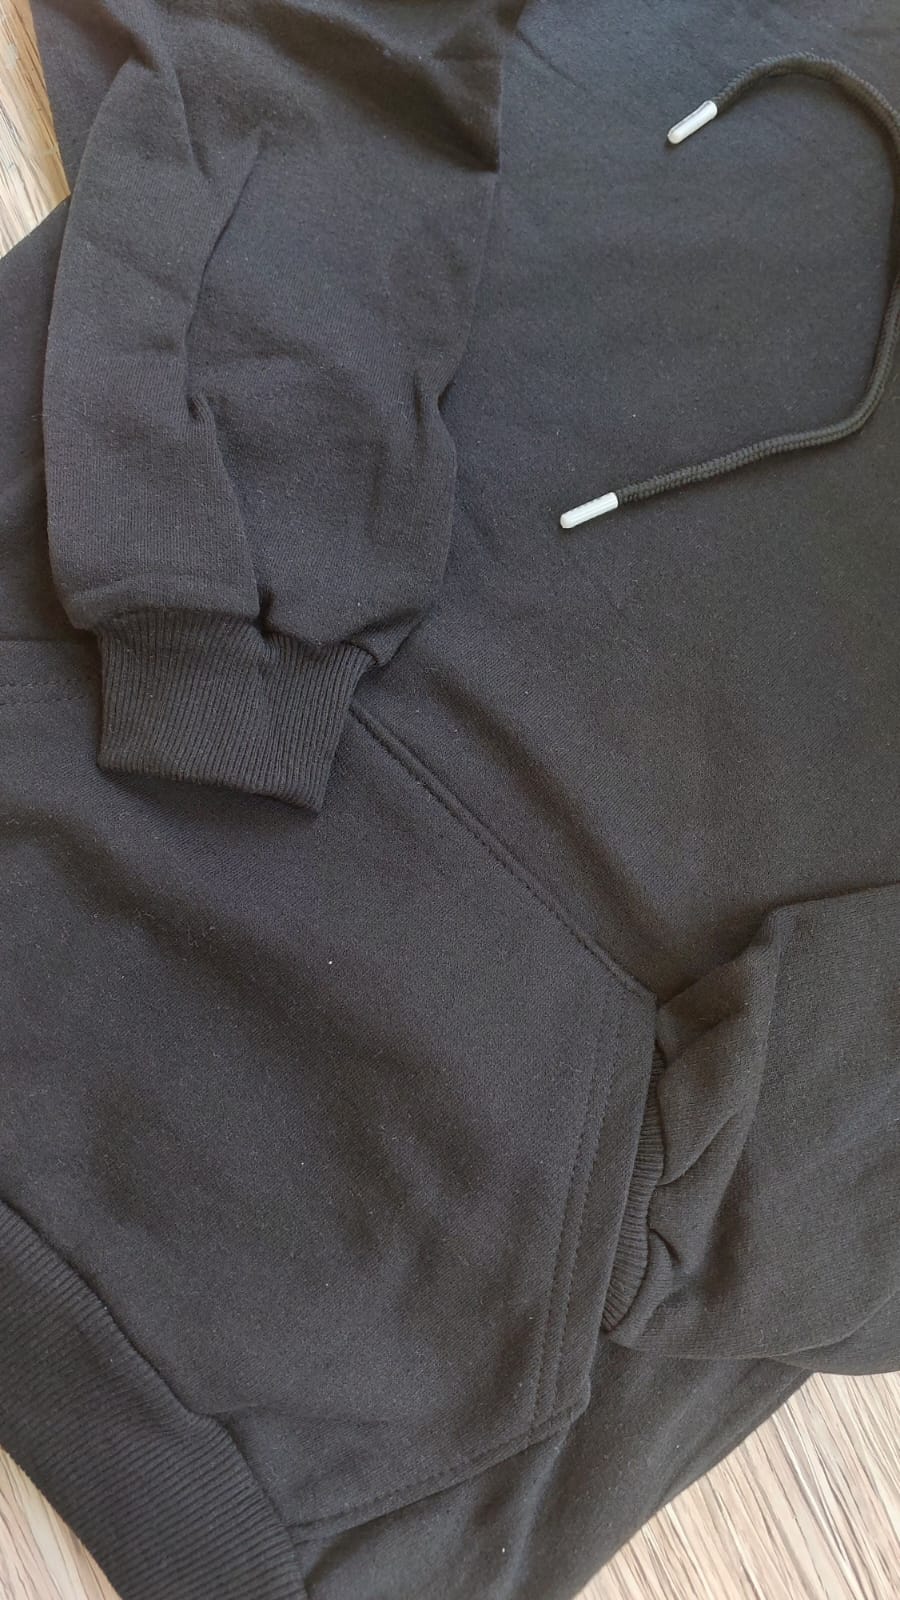 sweatshirt tasarla uygun fiyat yuvarlak yaka iki iplik 15